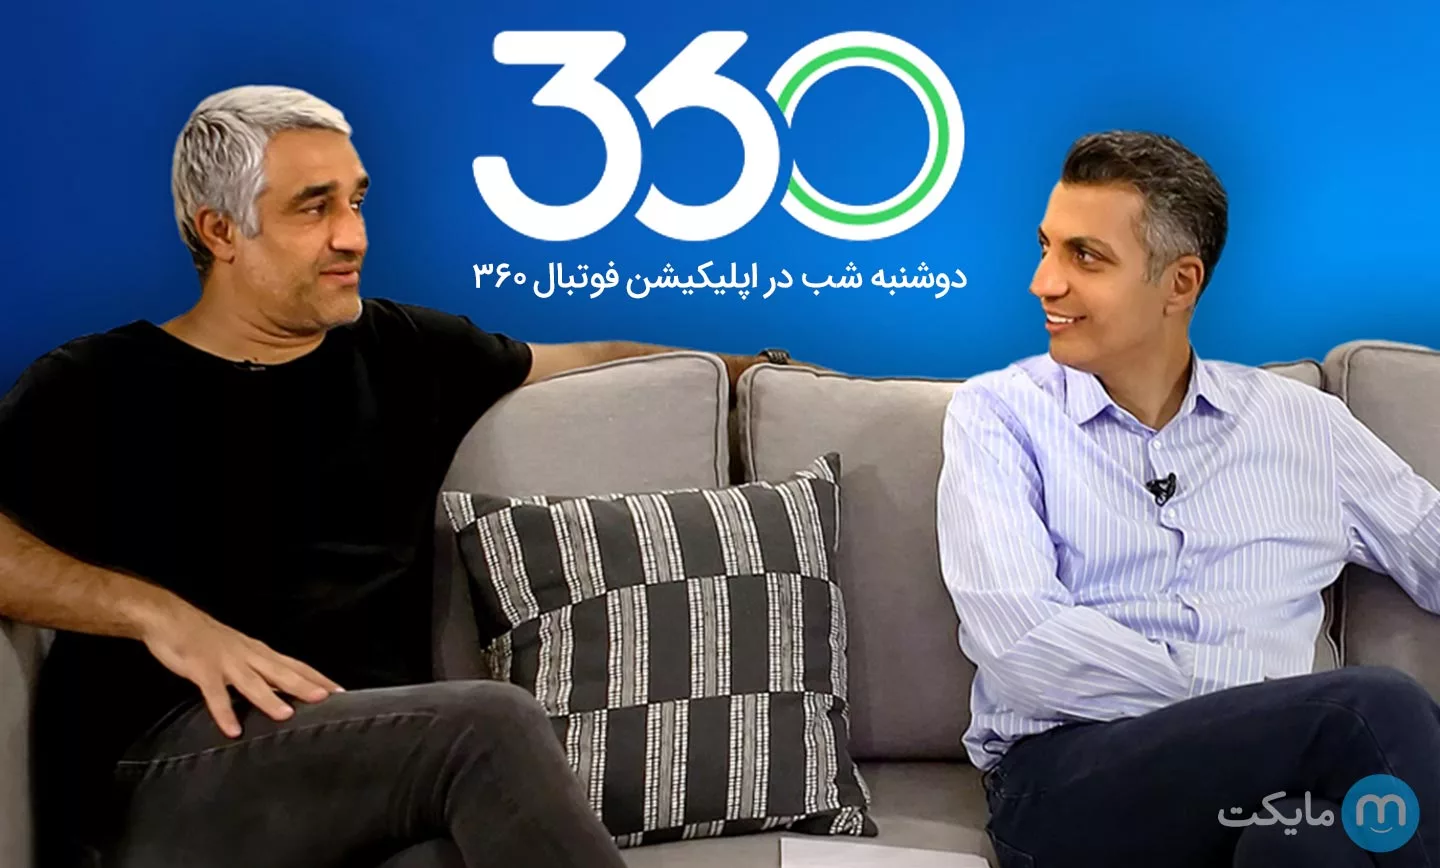 امشب منتظر پخش مصاحبه عادل فردوسی‌پور و پژمان جمشیدی از فوتبال 360 باشید